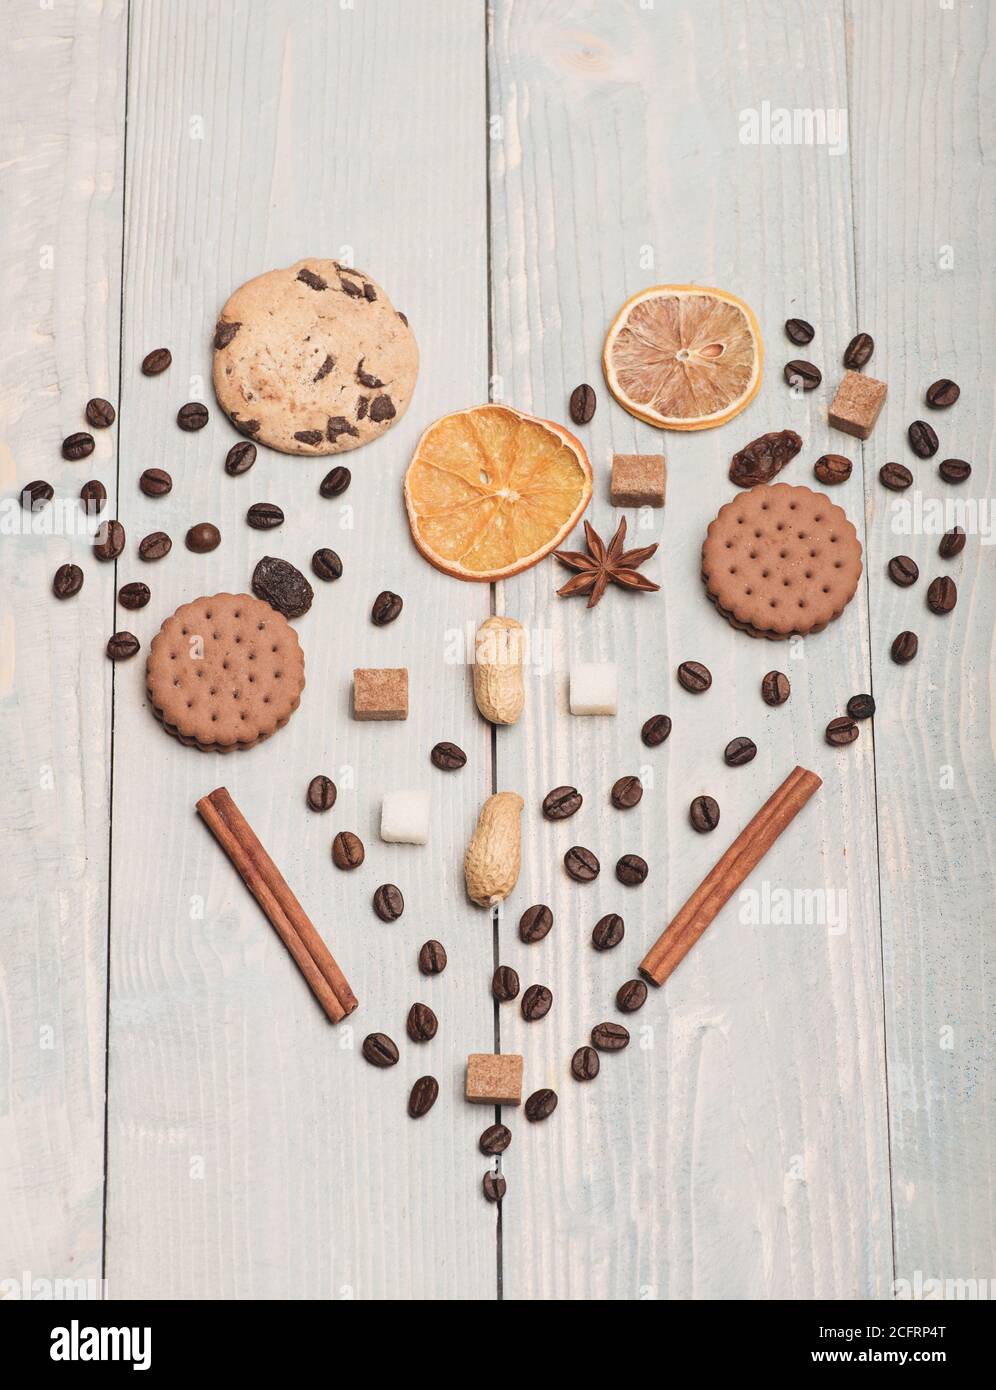 Modello composto da chicchi di caffè, biscotti, arancia secca, anice e  cannella. Cuore fatto di cibo e spezie su sfondo di legno chiaro vintage.  Il simbolo dell'amore è sinonimo di dolce sensazione.